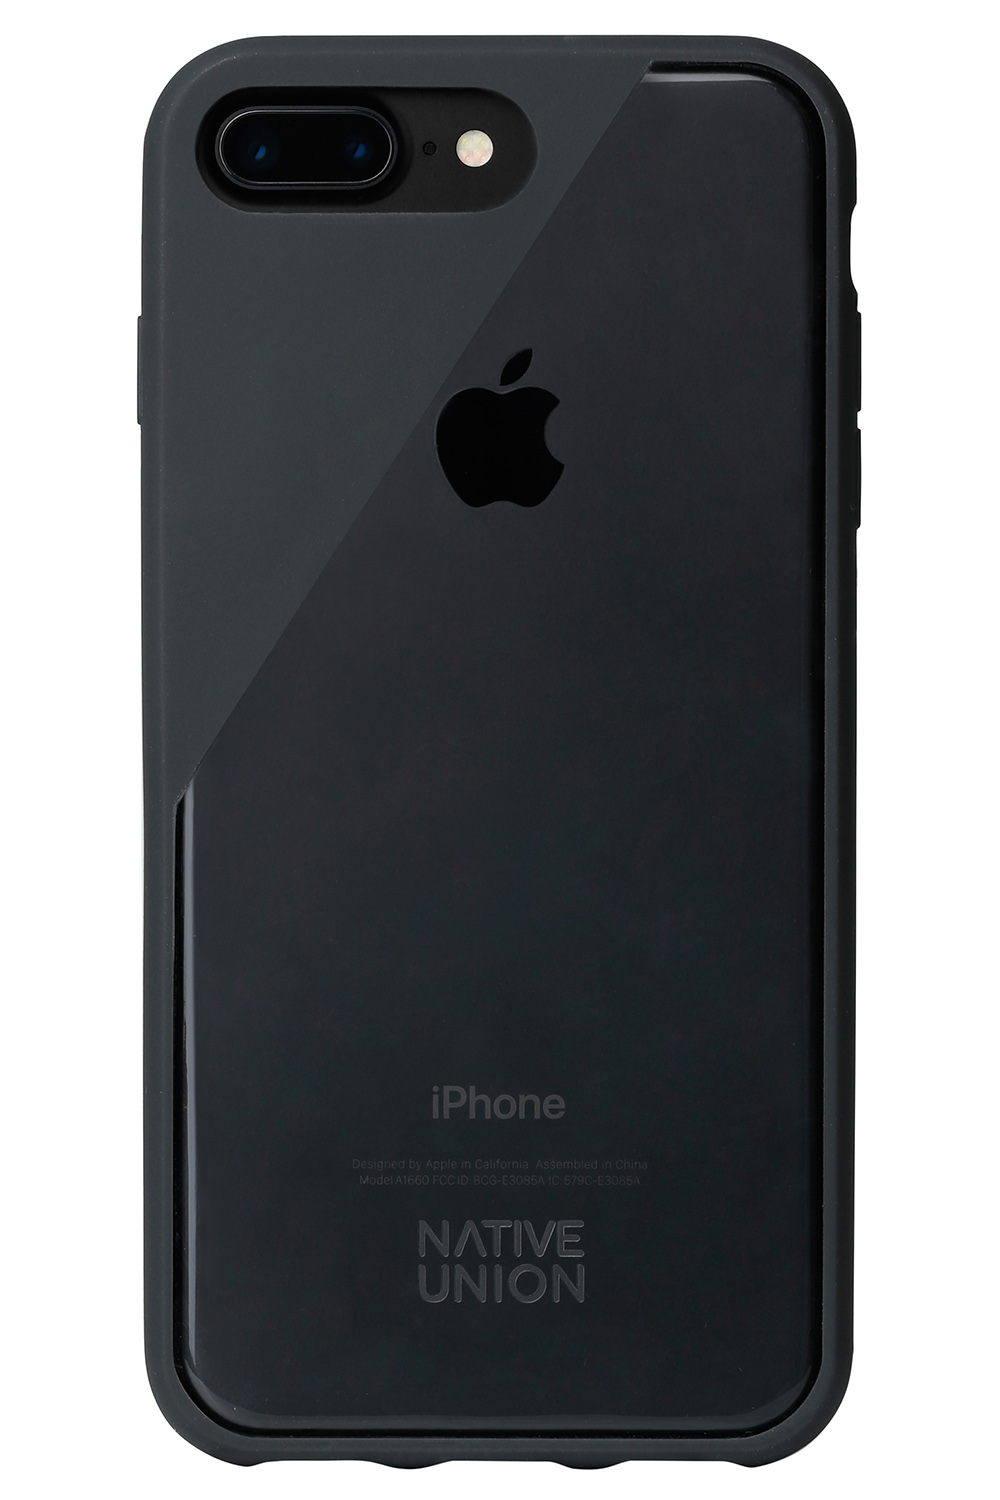 【Native Union】CLIC Crystal 水晶空壓手機殼-黑(iPhone 7 Plus)